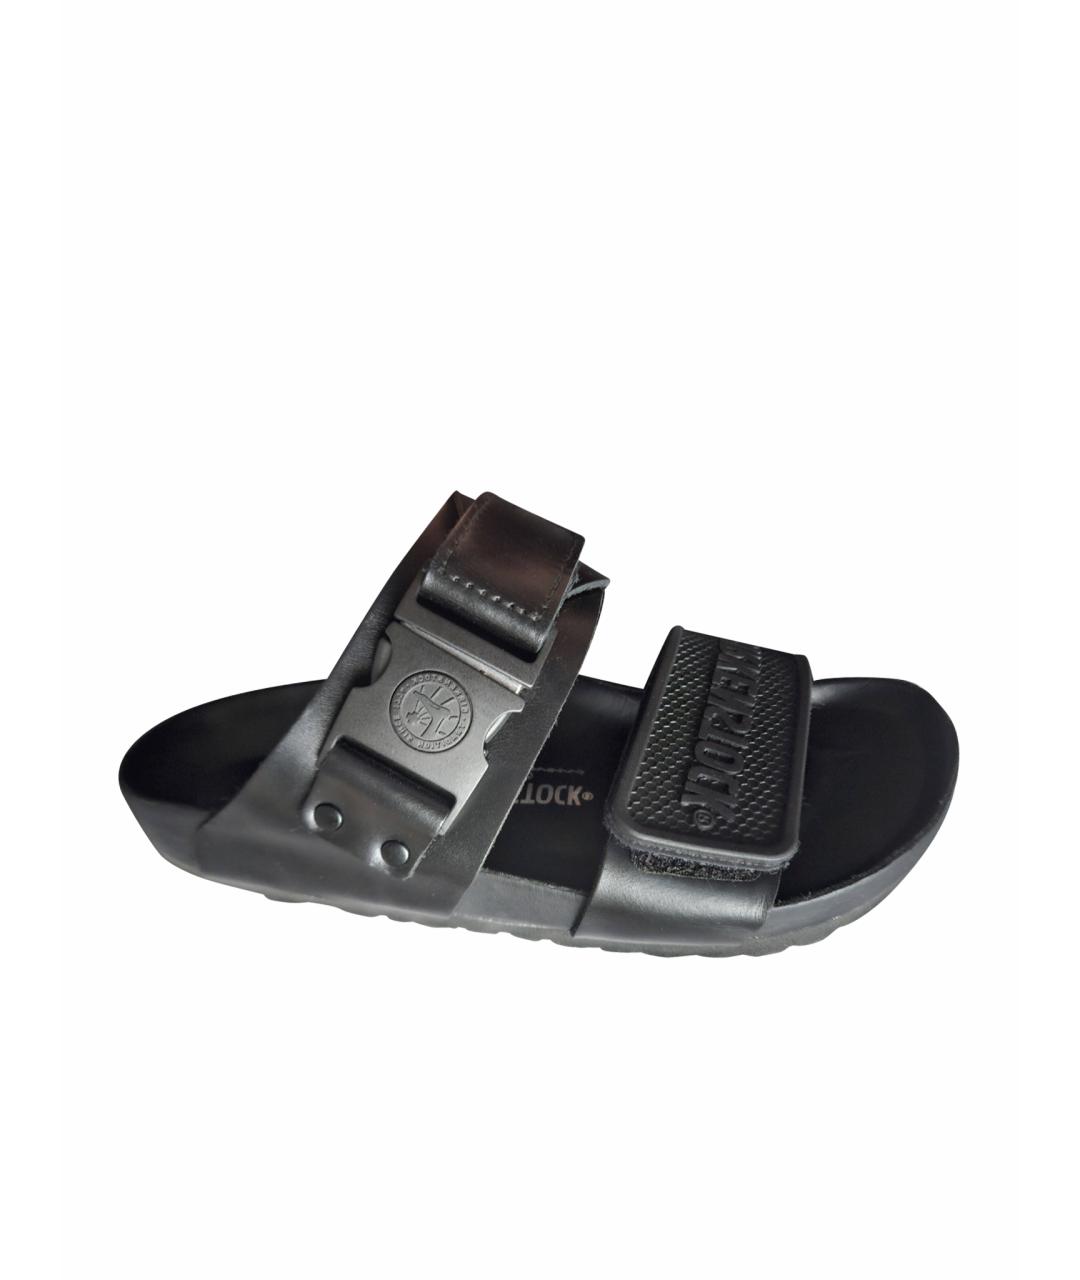 BIRKENSTOCK Черные кожаные сандалии, фото 1